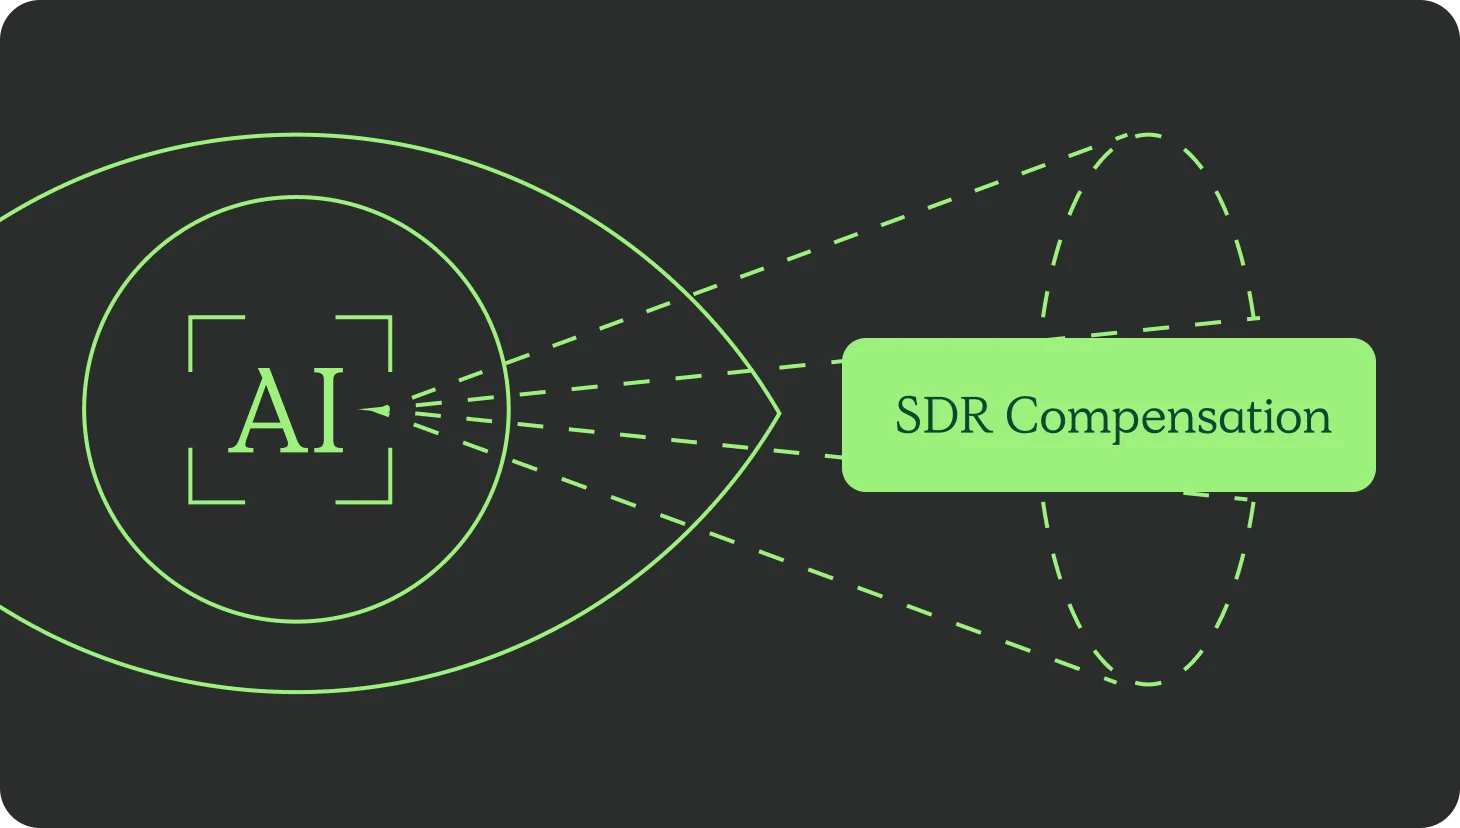 SDR compensation image